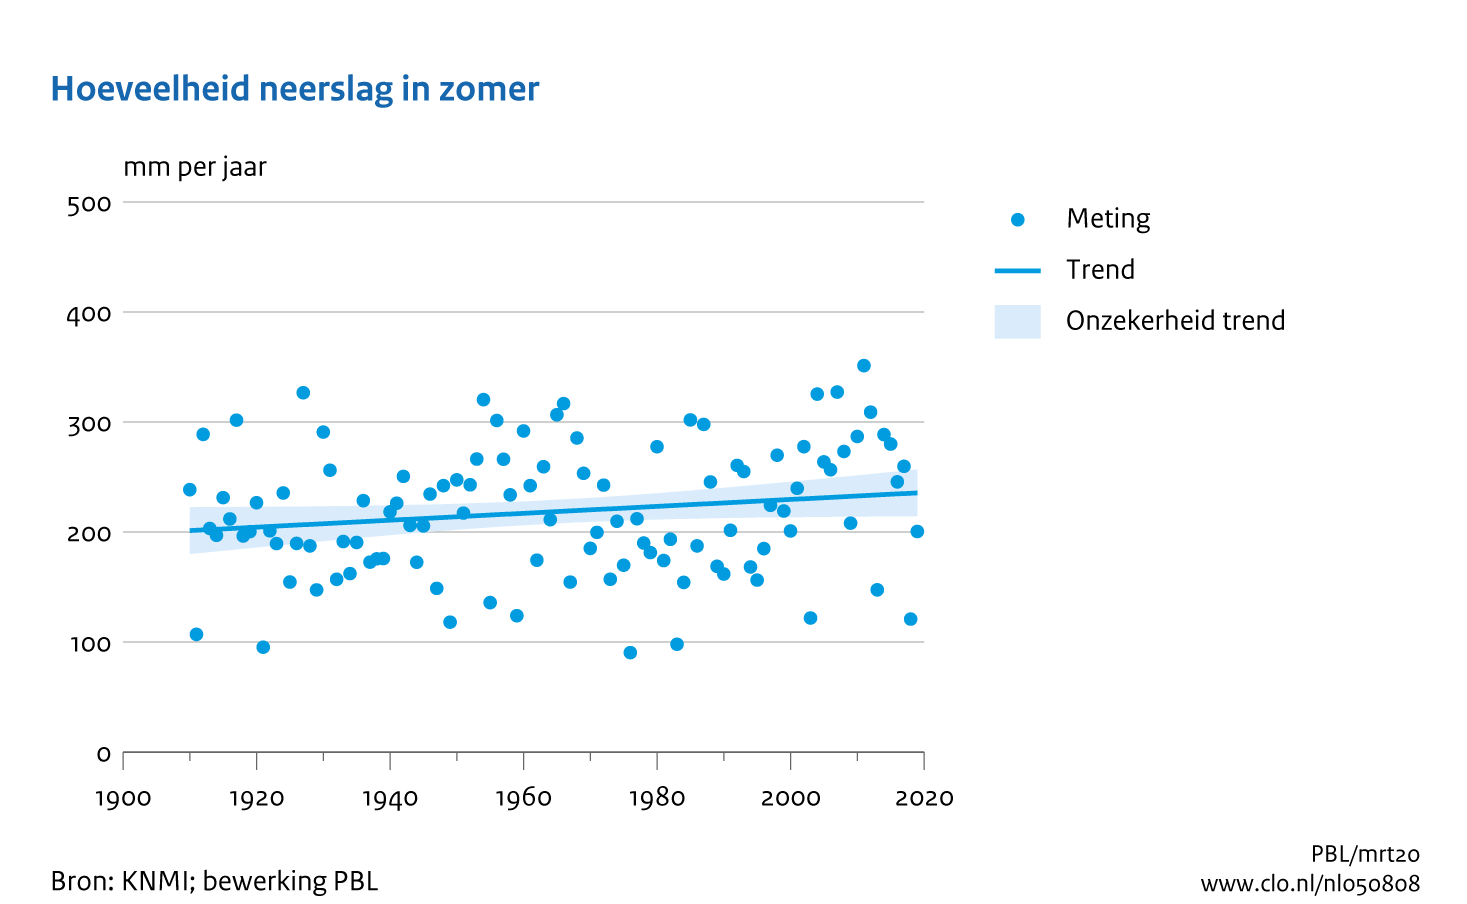 Figuur  Jaarlijkse hoeveelheid neerslag zomer in Nederland. In de rest van de tekst wordt deze figuur uitgebreider uitgelegd.